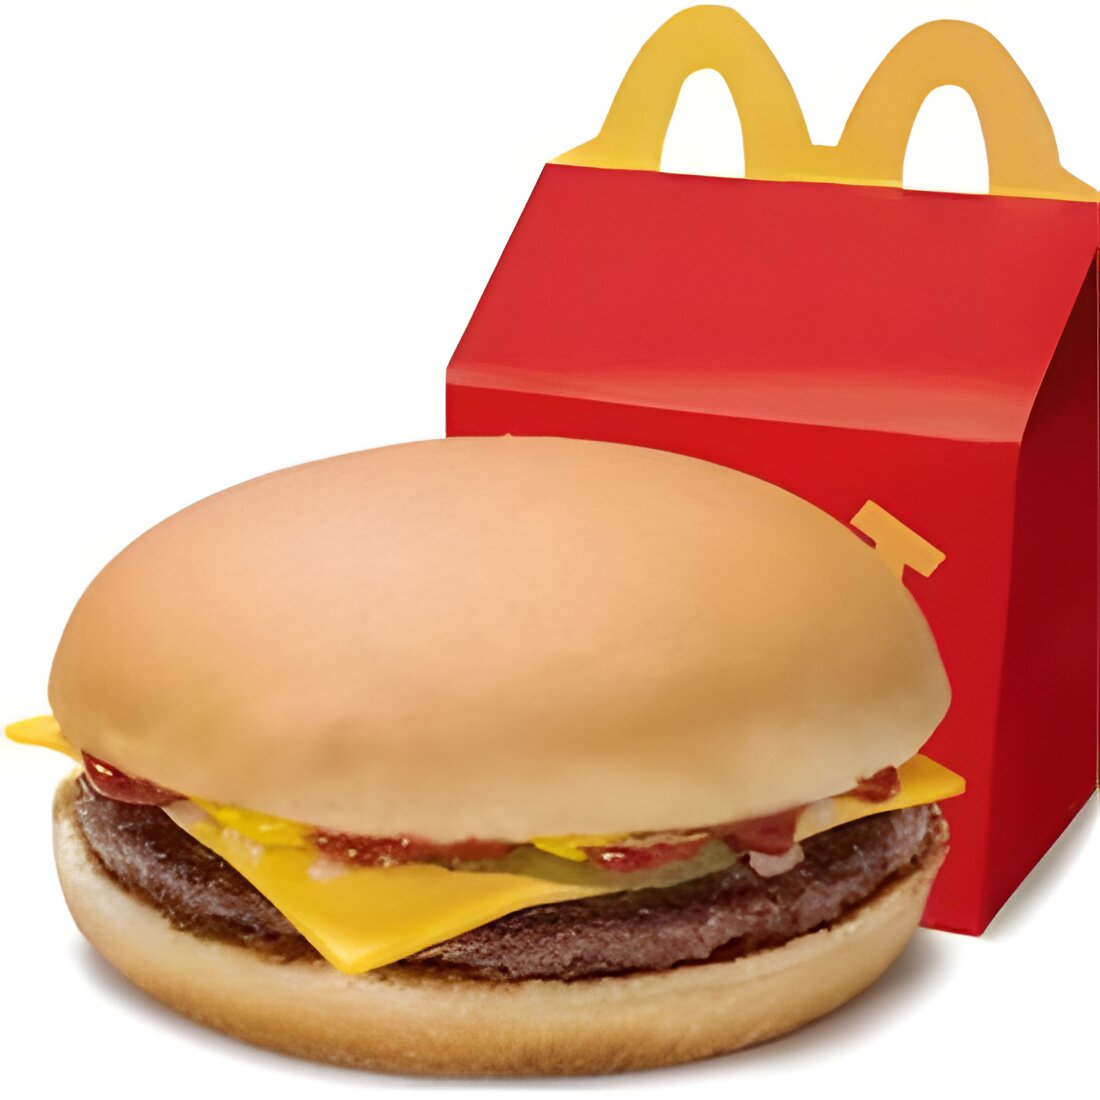 Free Cheeseburger at McDonald's